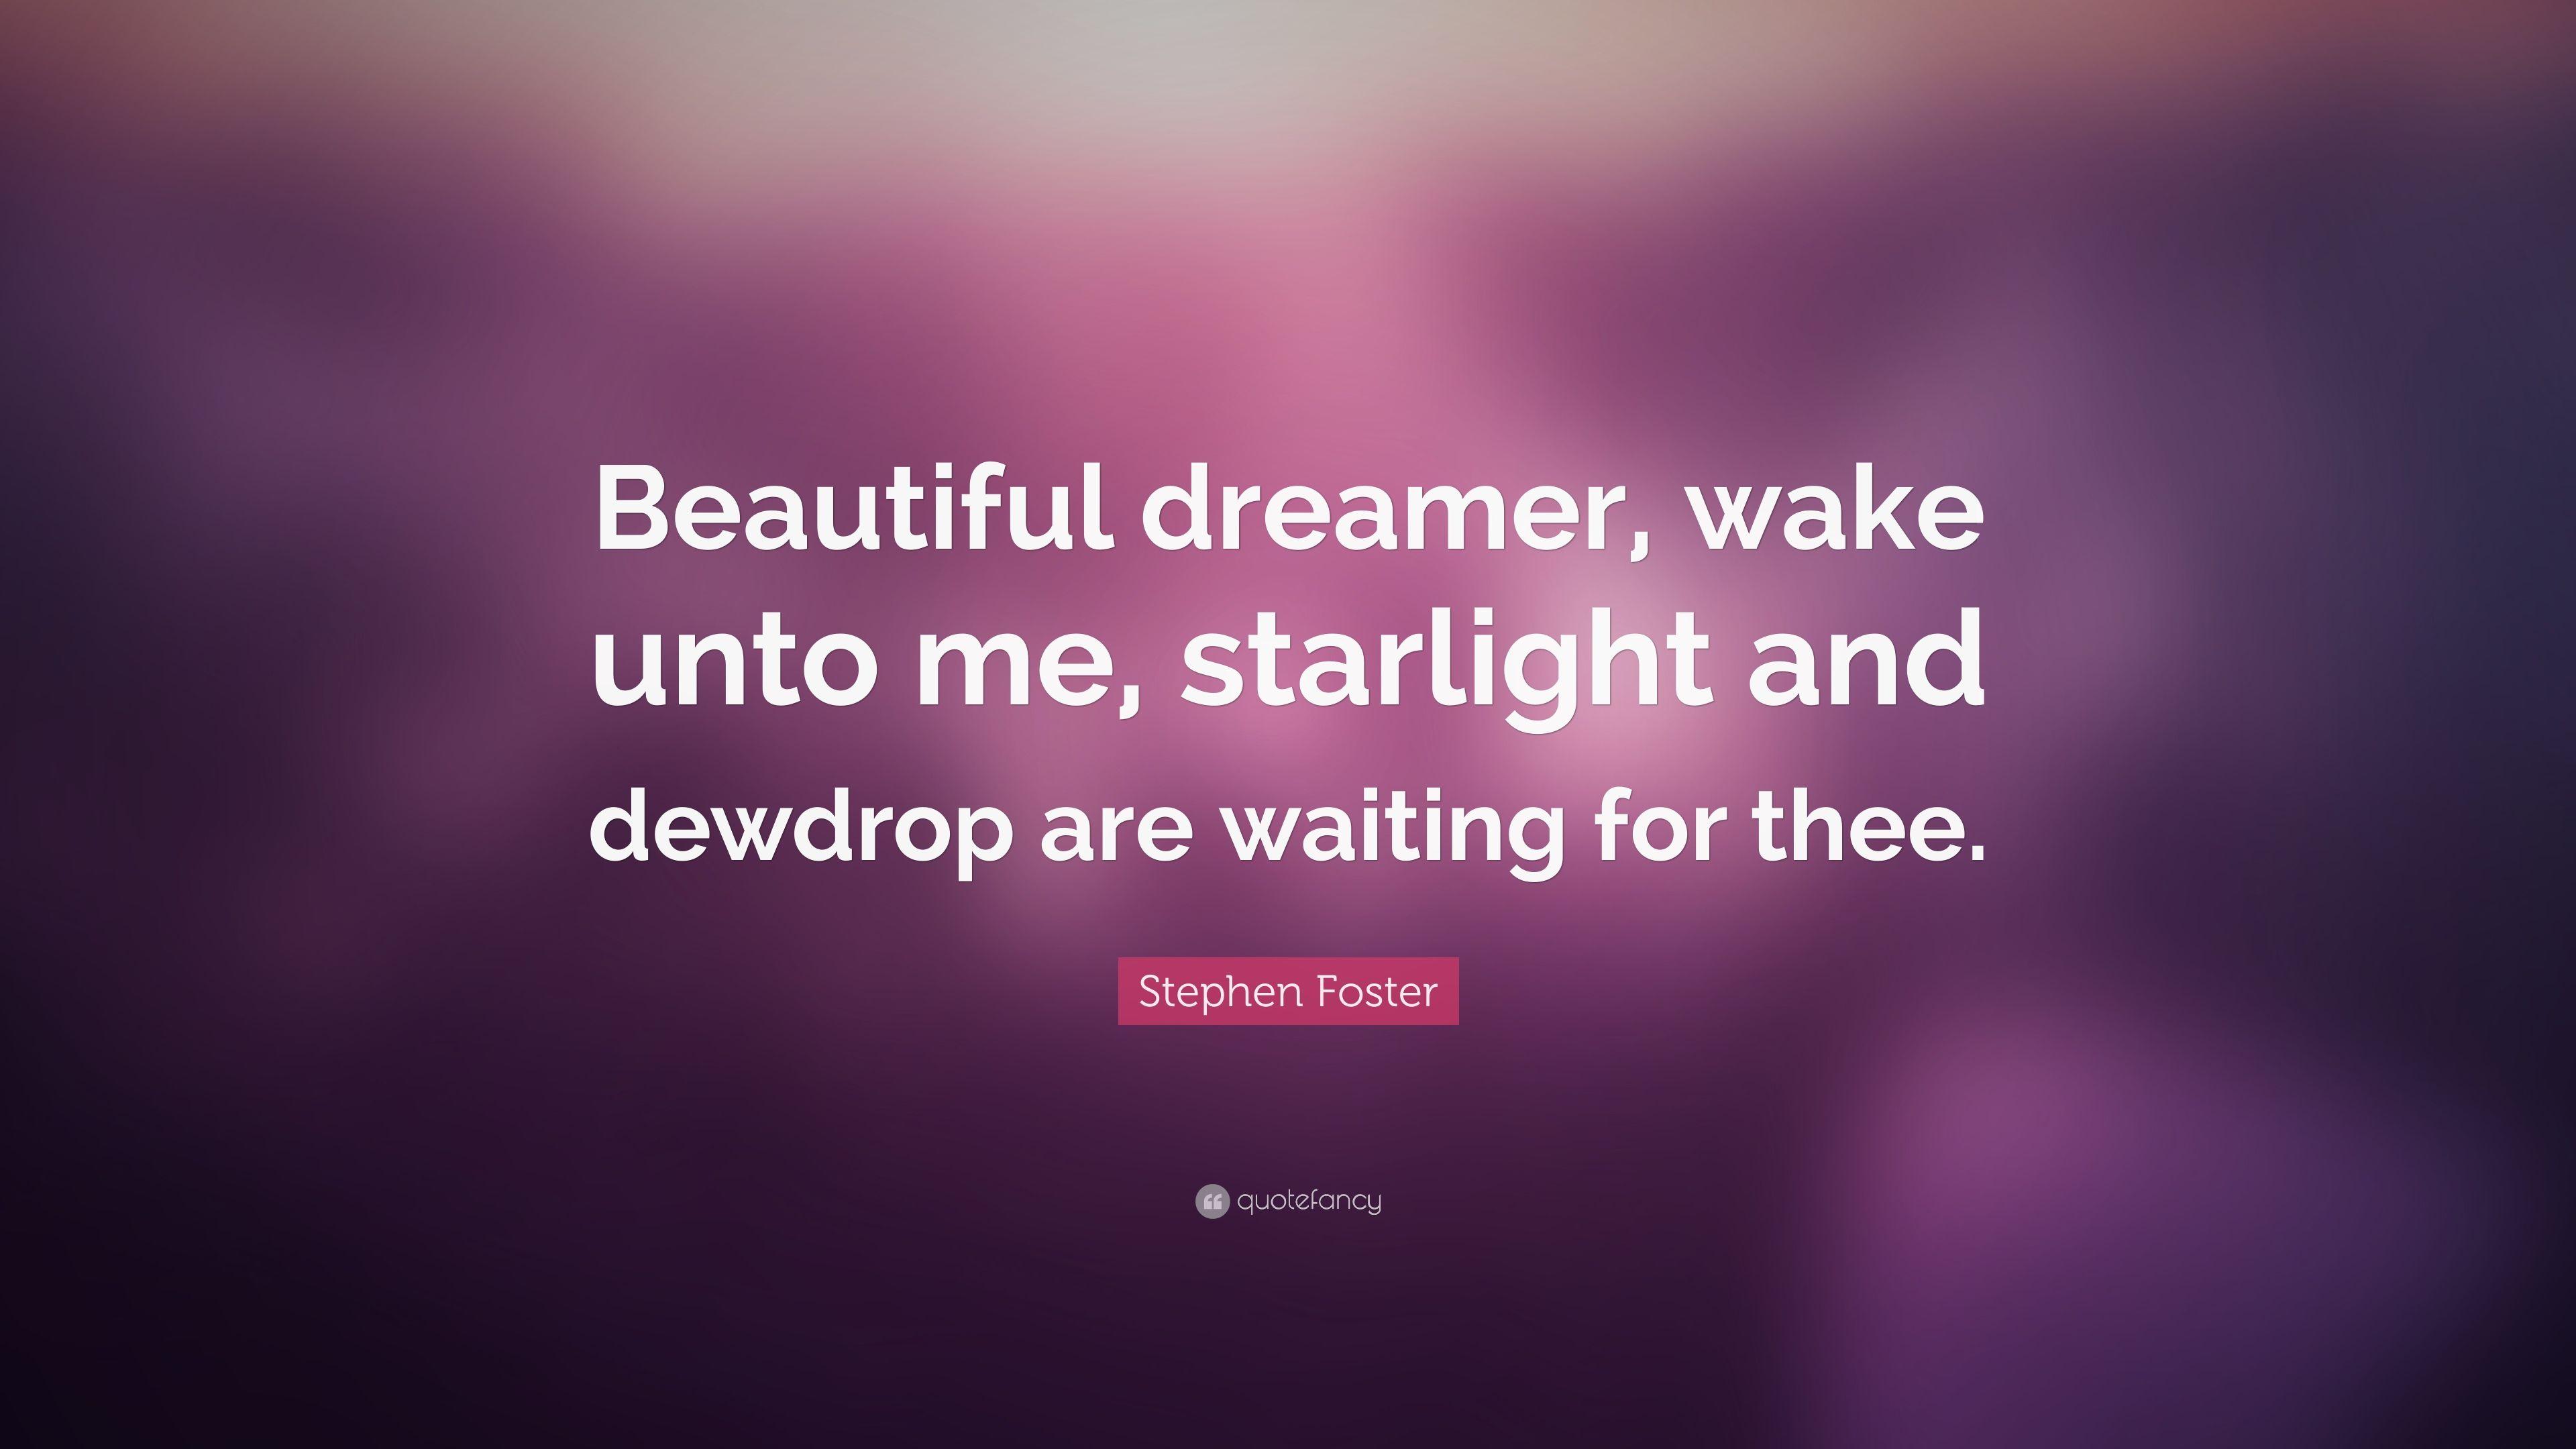 Stephen Foster Quote: “Beautiful dreamer, wake unto me, starlight